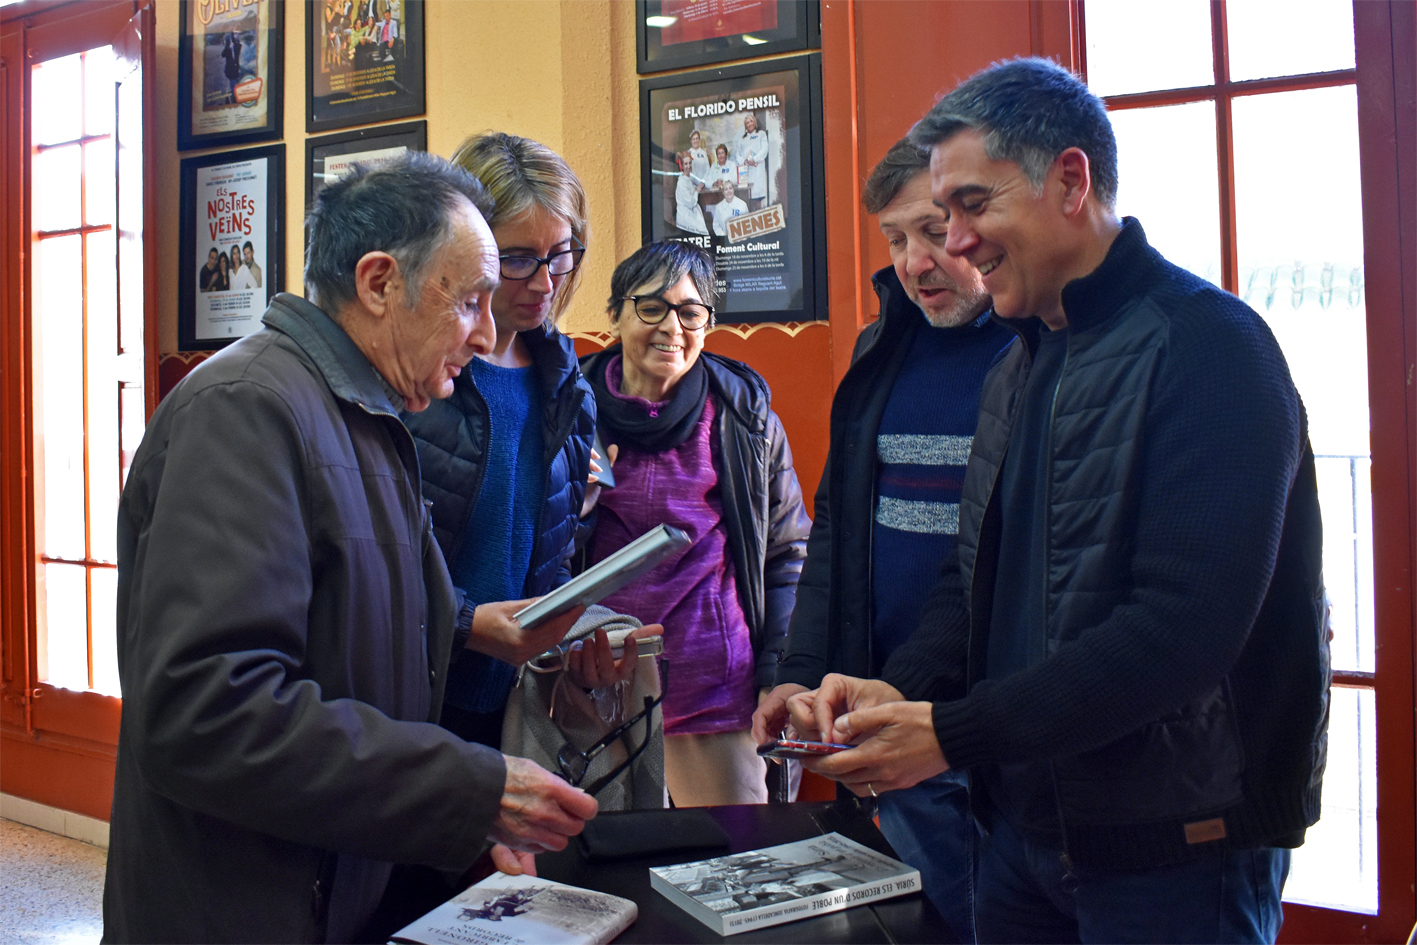 L'autor de la novel·la 'El fabricant de records', Martí Gironell, amb el fotògraf surienc Josep Juncadella, i la regidora de Festes, Alba Santamaria, després de la presentació de l'obra, dins de la Festa de Sant Sebastià.